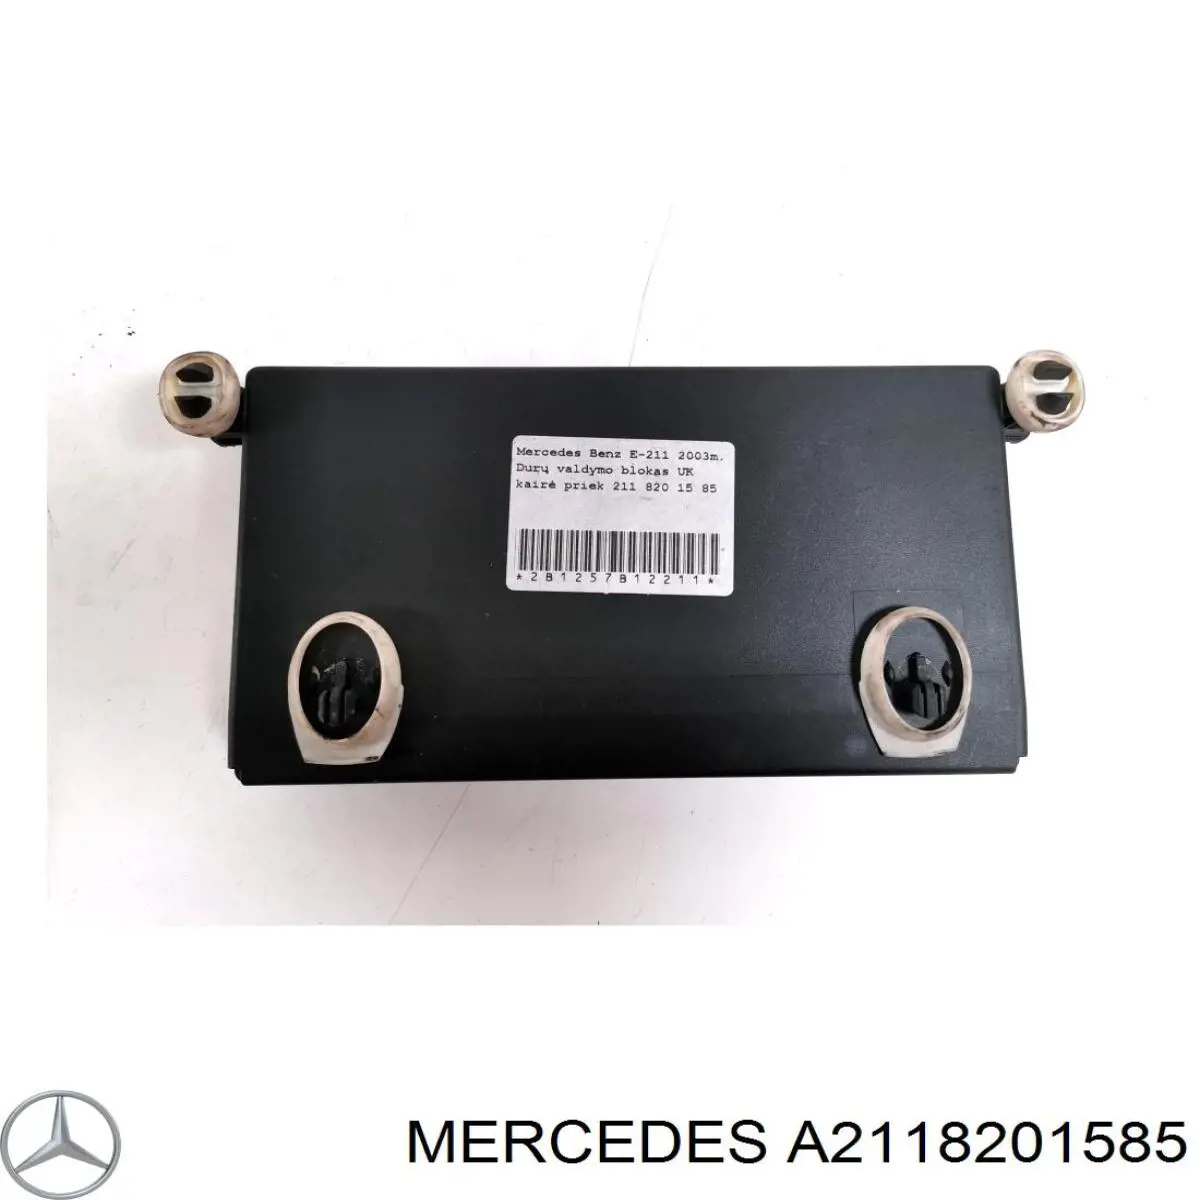 A2118201585 Mercedes bloque confort